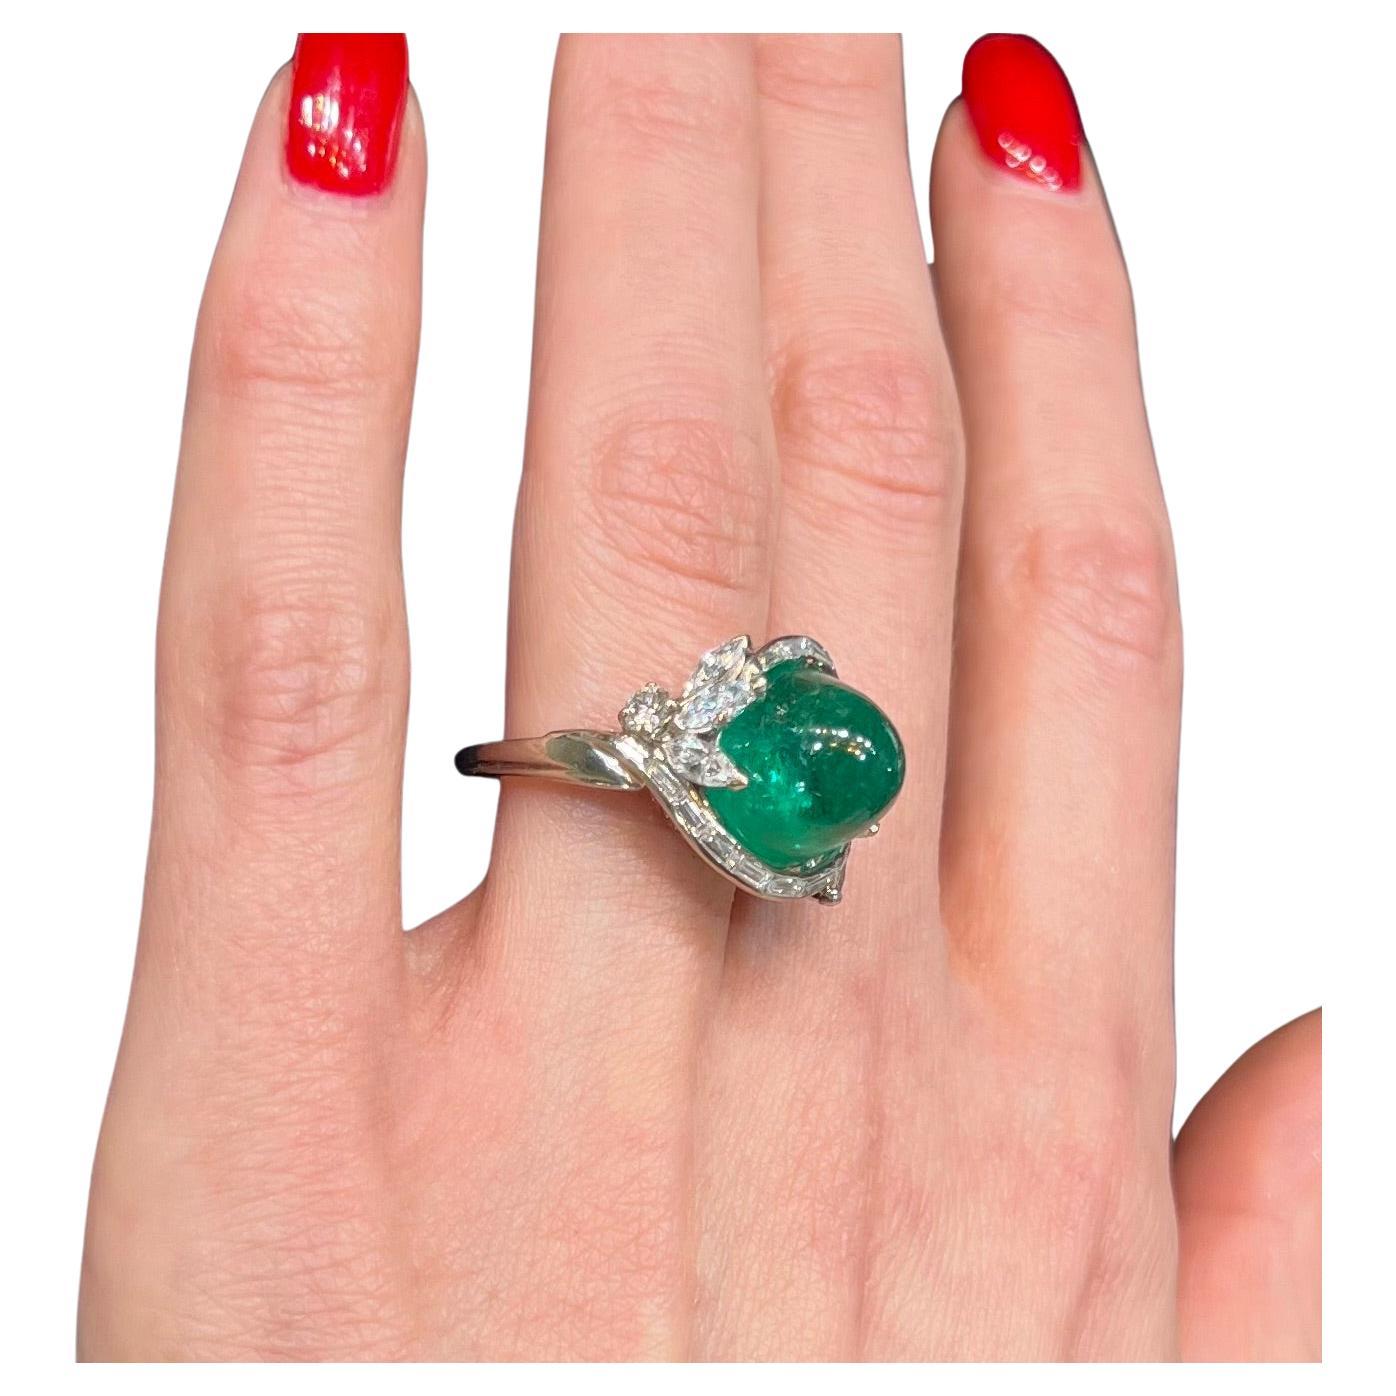 Der Inbegriff von Luxus und Eleganz - der Sterle Paris Natural Columbian Emerald and Diamond Ring. Dieses exquisite Schmuckstück besteht aus einem atemberaubenden 7-karätigen natürlichen Smaragd, der mit seinem satten, leuchtenden Grün alle Blicke